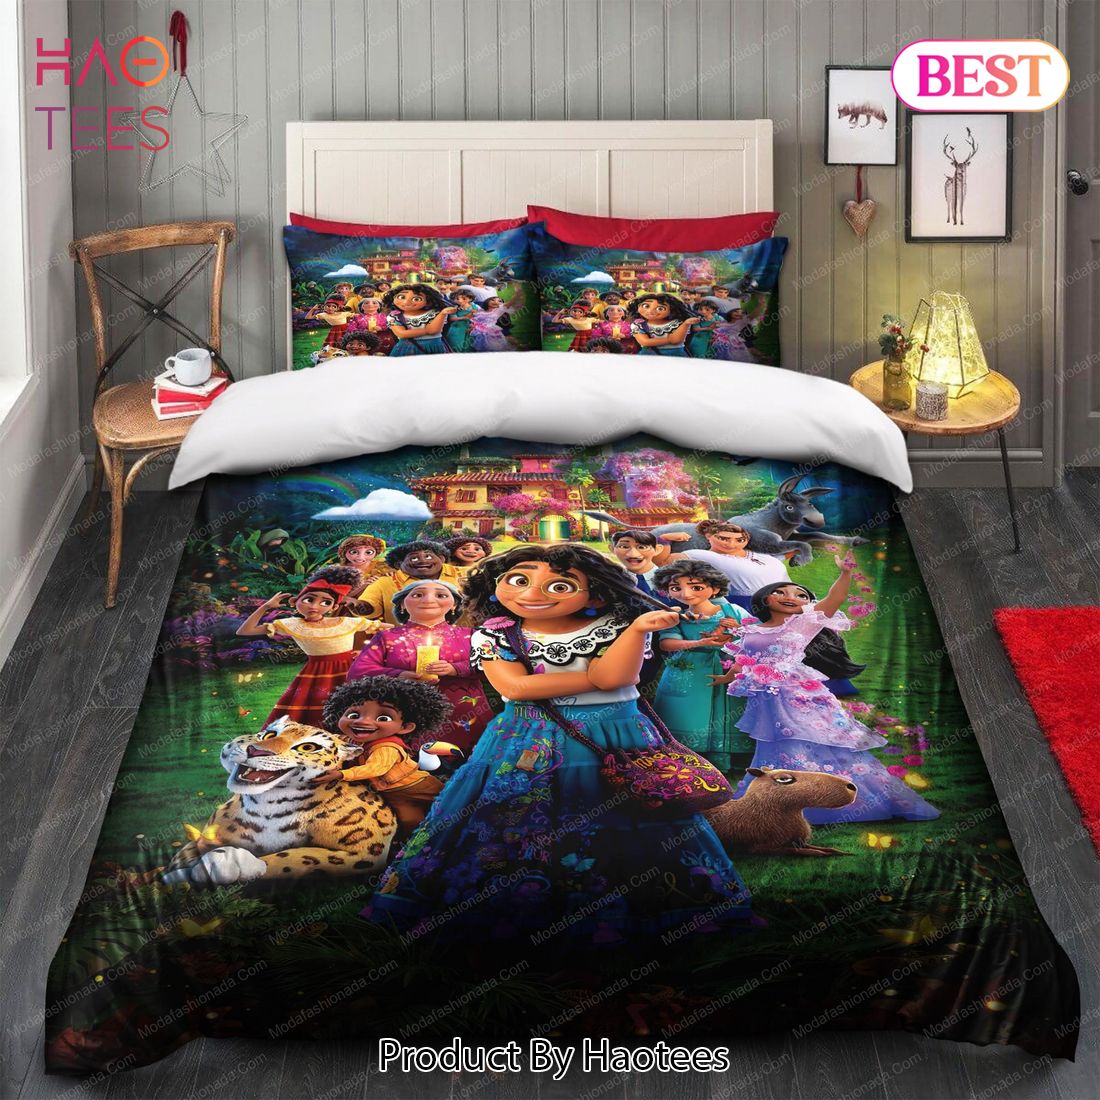 Buy Encanto Disney Movie 2021 Bedding Sets Bed Sets, Bedroom Sets, Comforter Sets, Duvet Cover, Bedspread